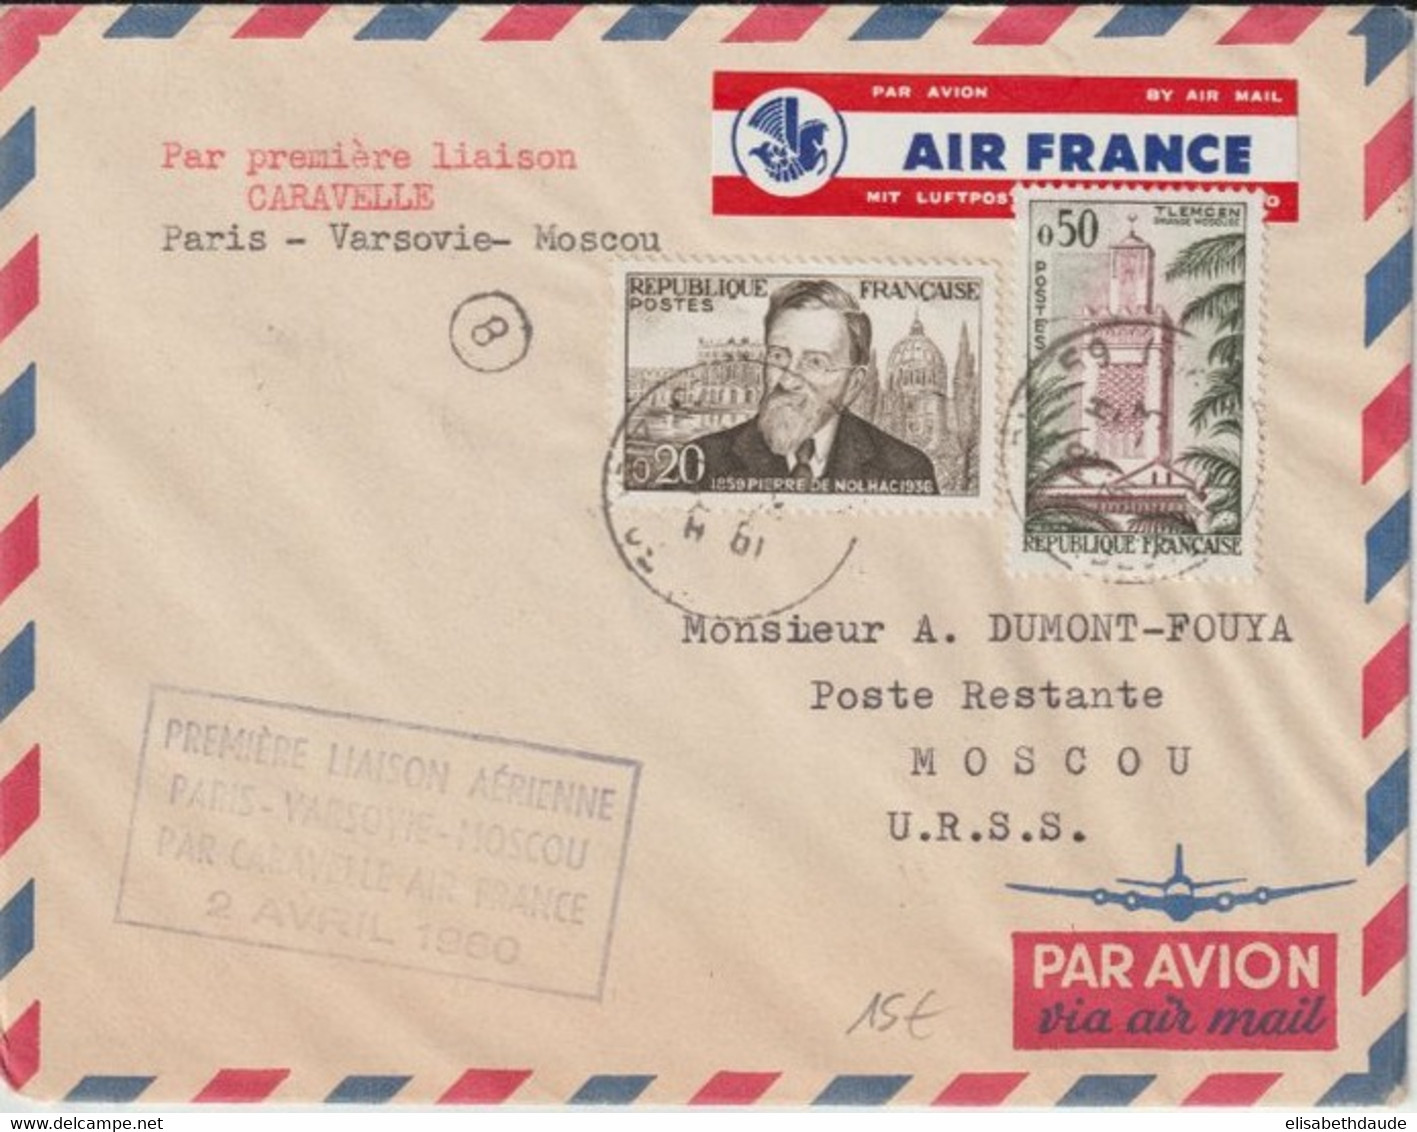 1960 - ENVELOPPE 1° LIAISON AERIENNE Par CARAVELLE AIR FRANCE (ETIQUETTE !)  PARIS - VARSOVIE (POLOGNE) - MOSCOU (URSS) - Premiers Vols